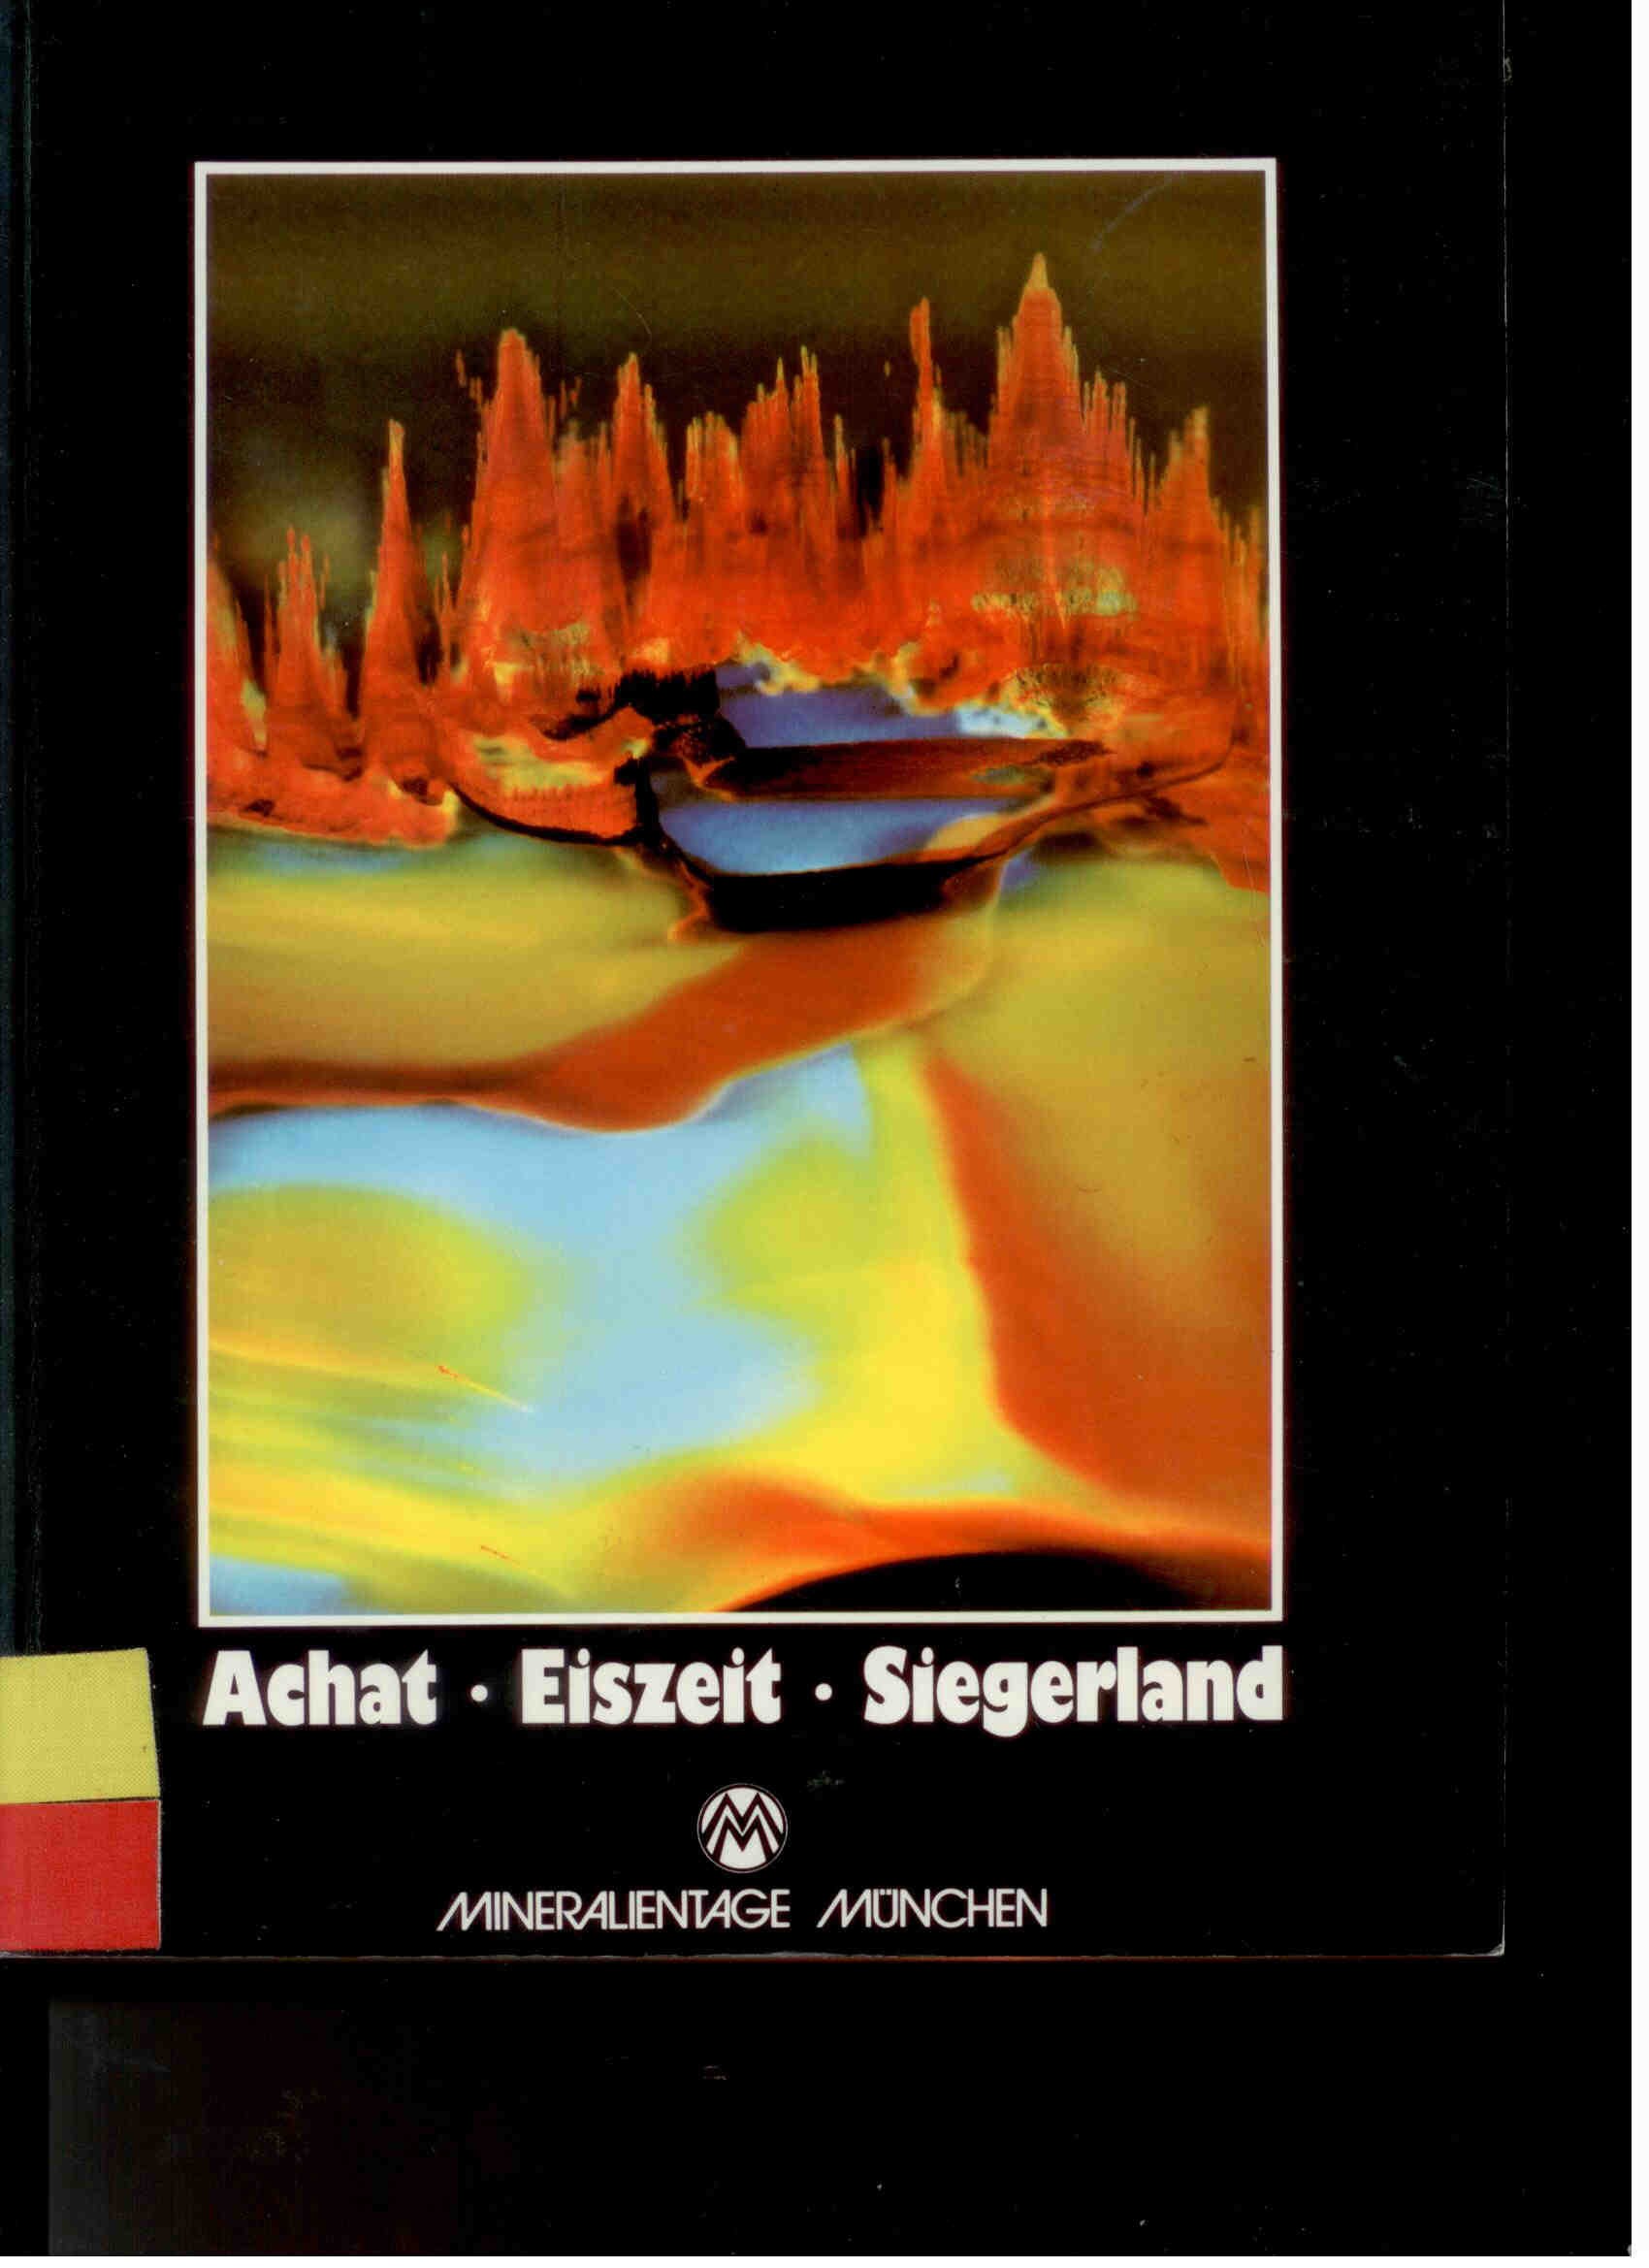 Münchner Mineralientage 1987 Achat, Eiszeit, Siegerland